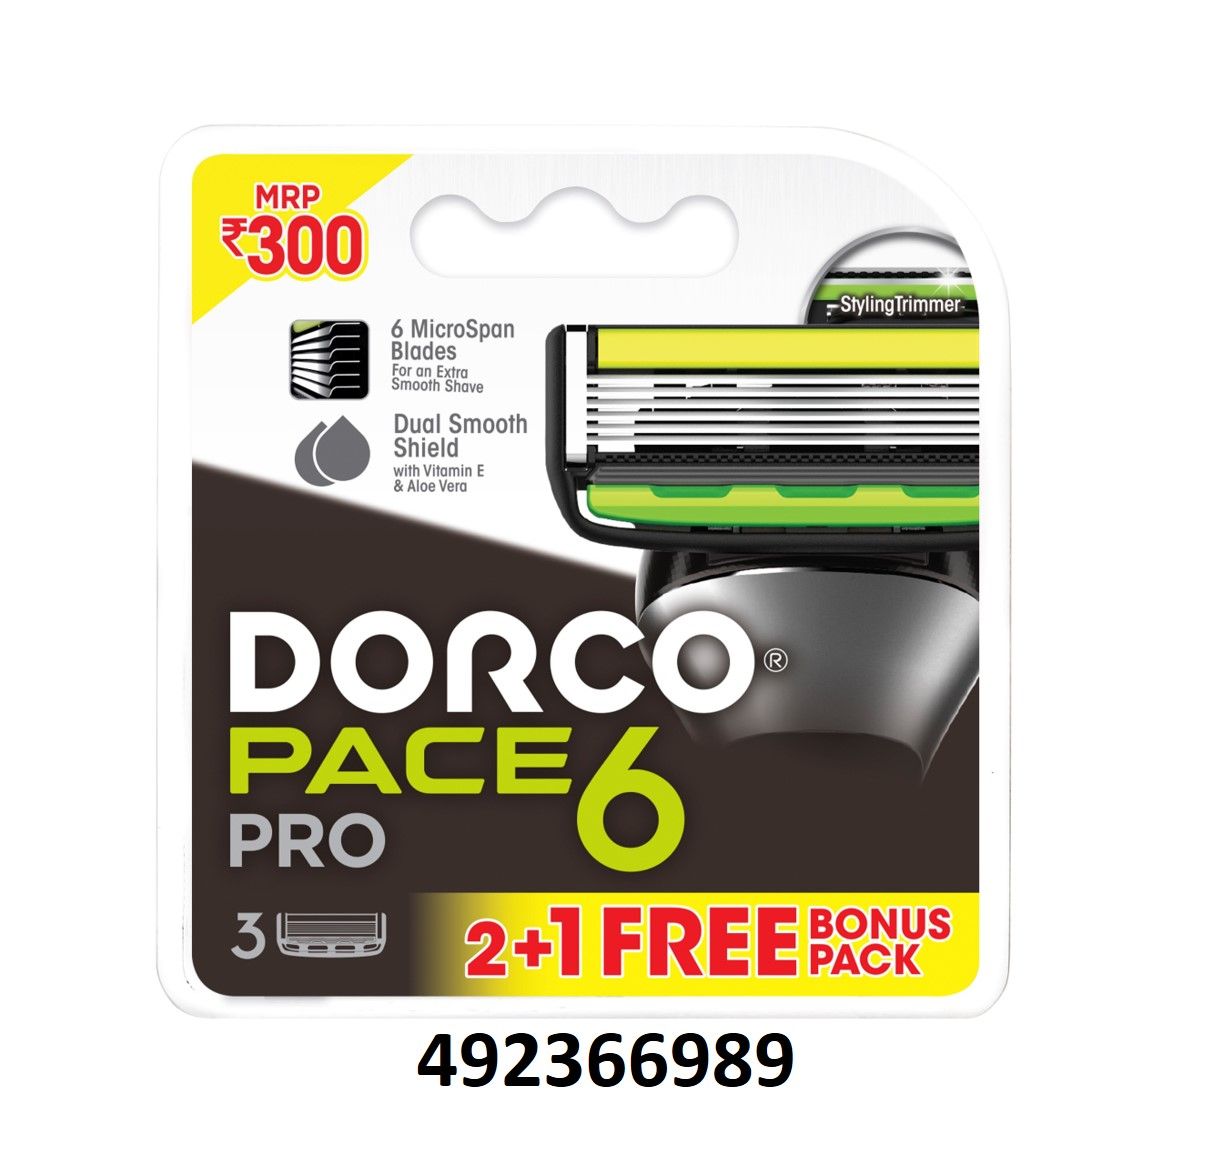 Buy Dorco Pace Pro 6 Cartridges, 2 Count Online